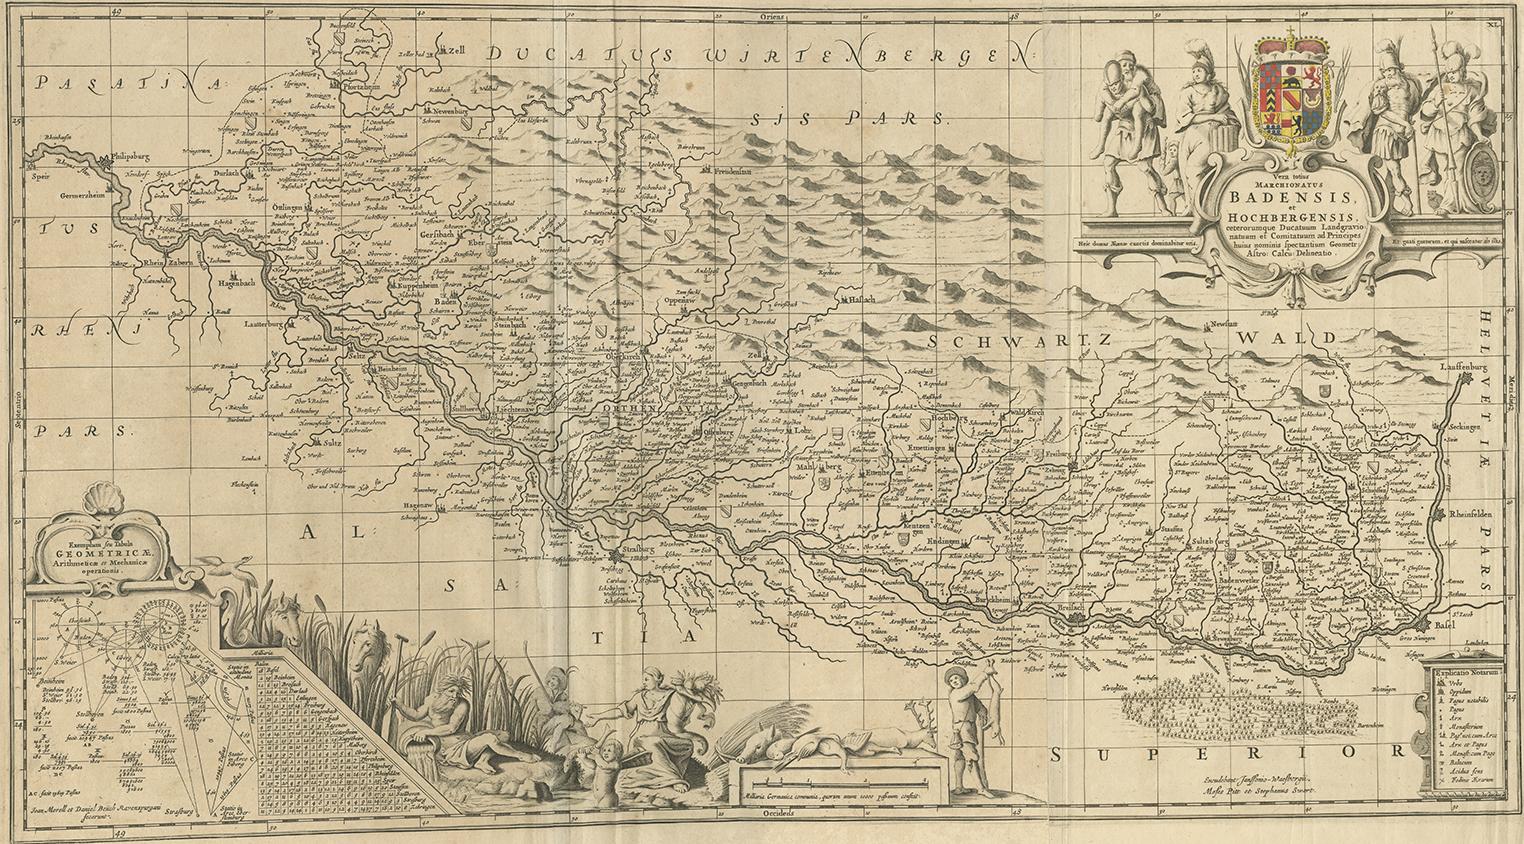 Antique map titled 'Vera totius marchionatus Badensis, et Hochbergensis ; ceterorumque ducatuum ladngravionatuum et comitatuum ad principes huius nominis spectantium geometr: astro: calcu: delineatio'. This map originates from 